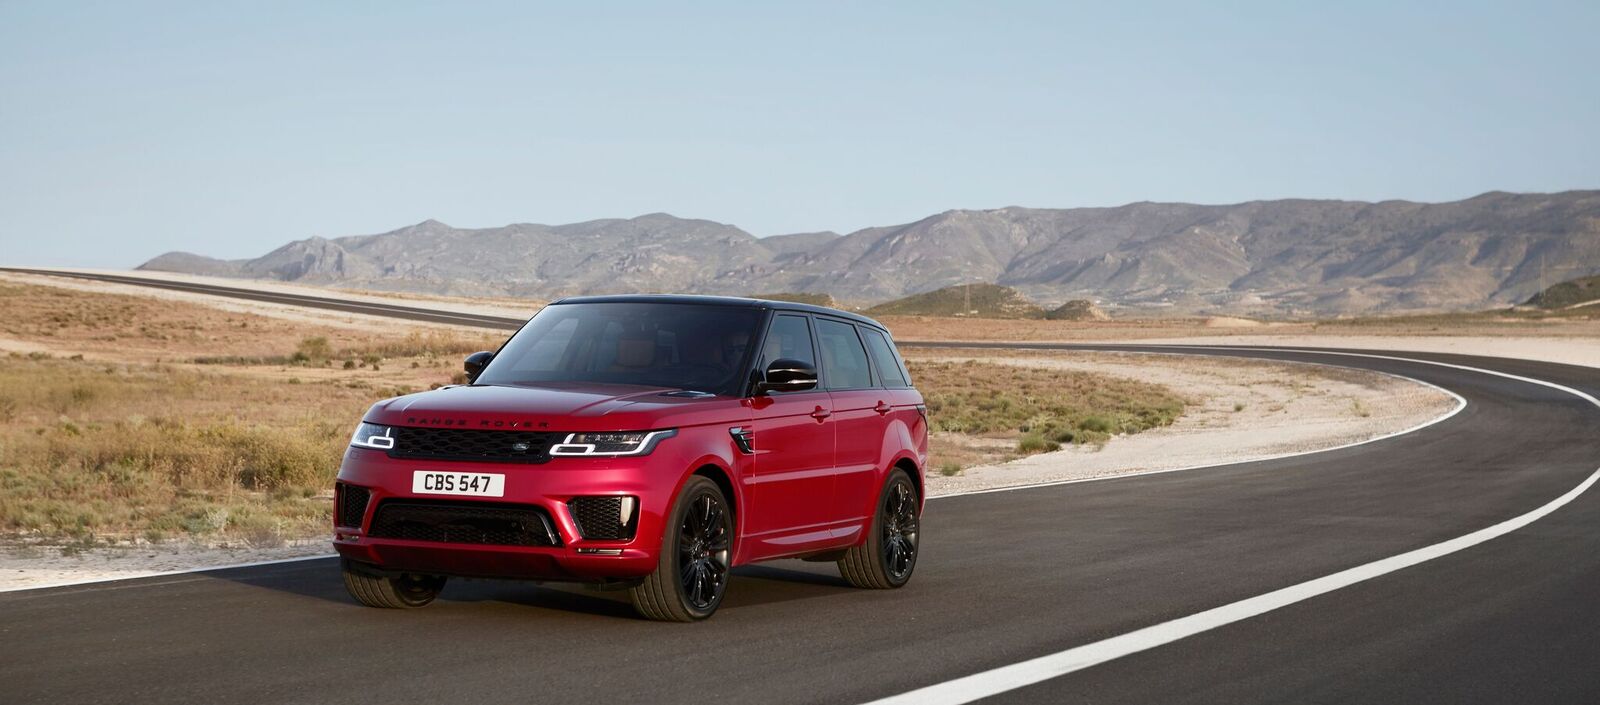 Land Rover convoca os modelos Range Rover e Range Rover Sport para recall do módulo de controle da carroceria. Problema afeta as unidades 2018 e 2019.